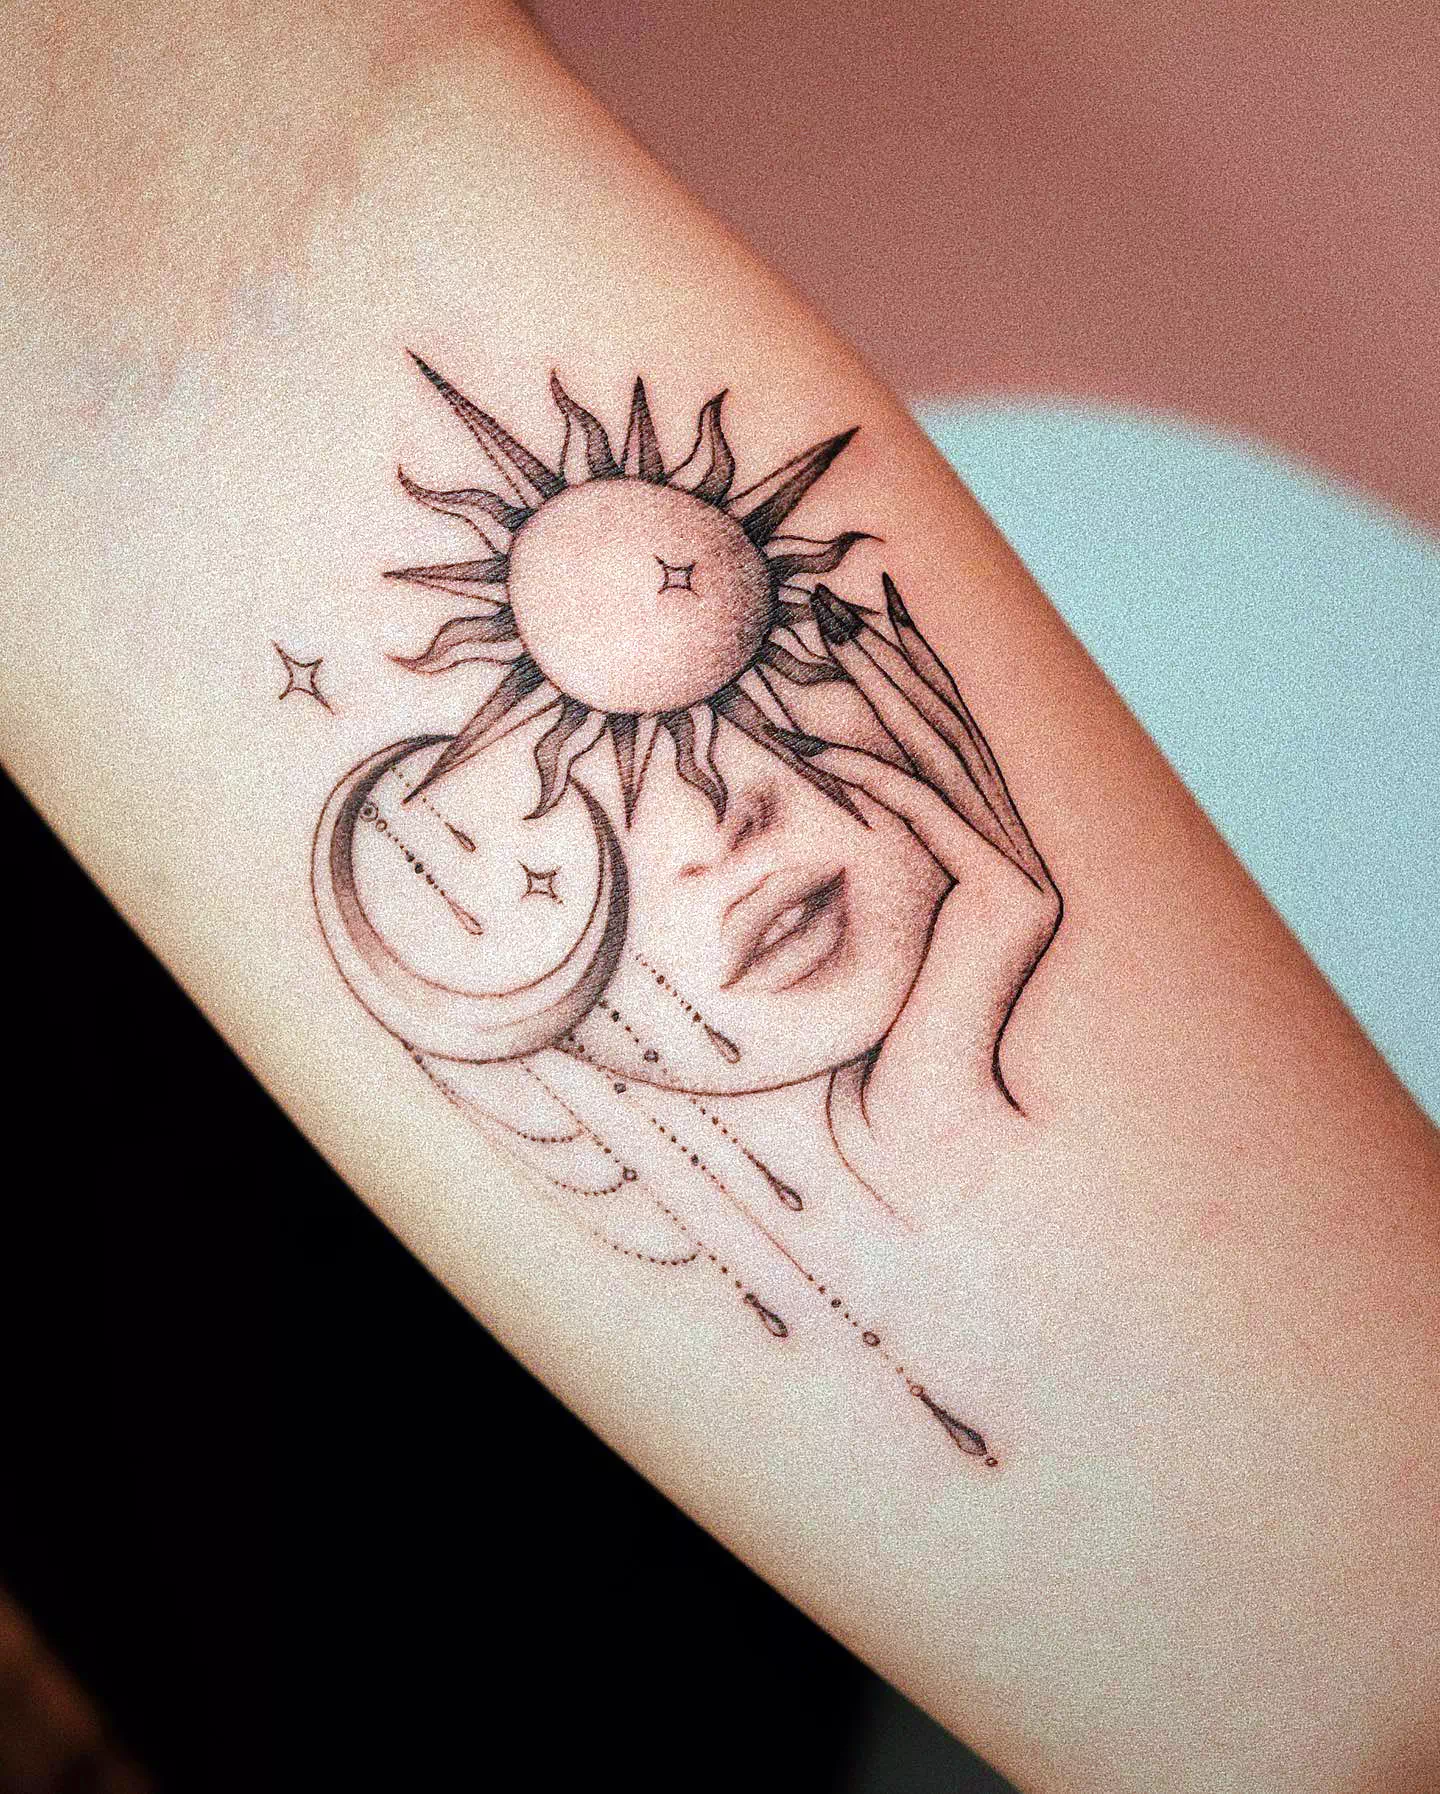 Tatuaje del sol y la luna 2